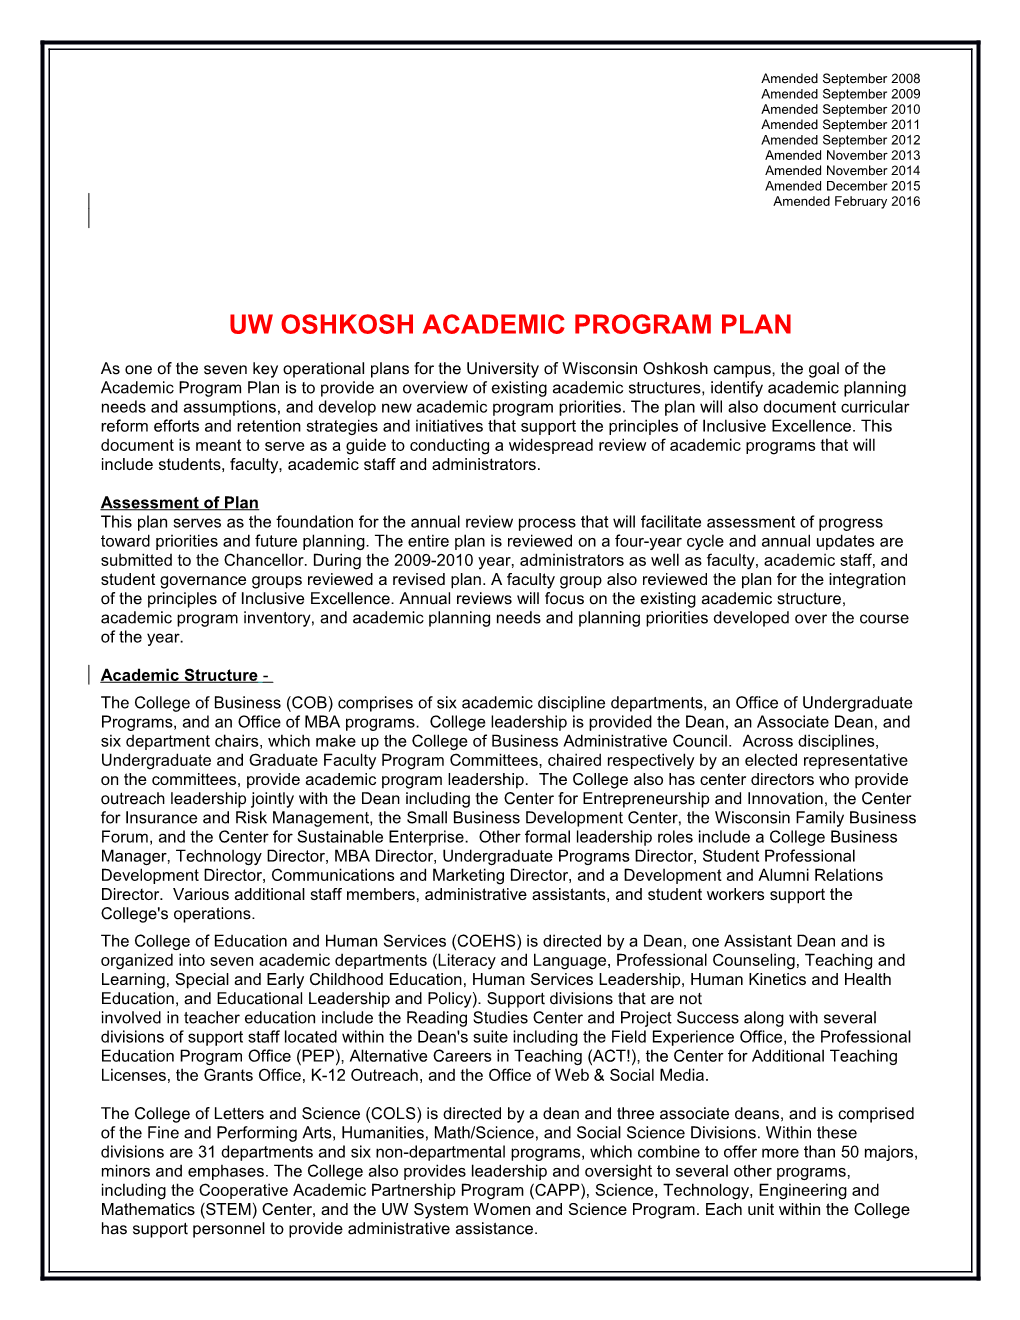 Uw Oshkosh Academic Program Plan